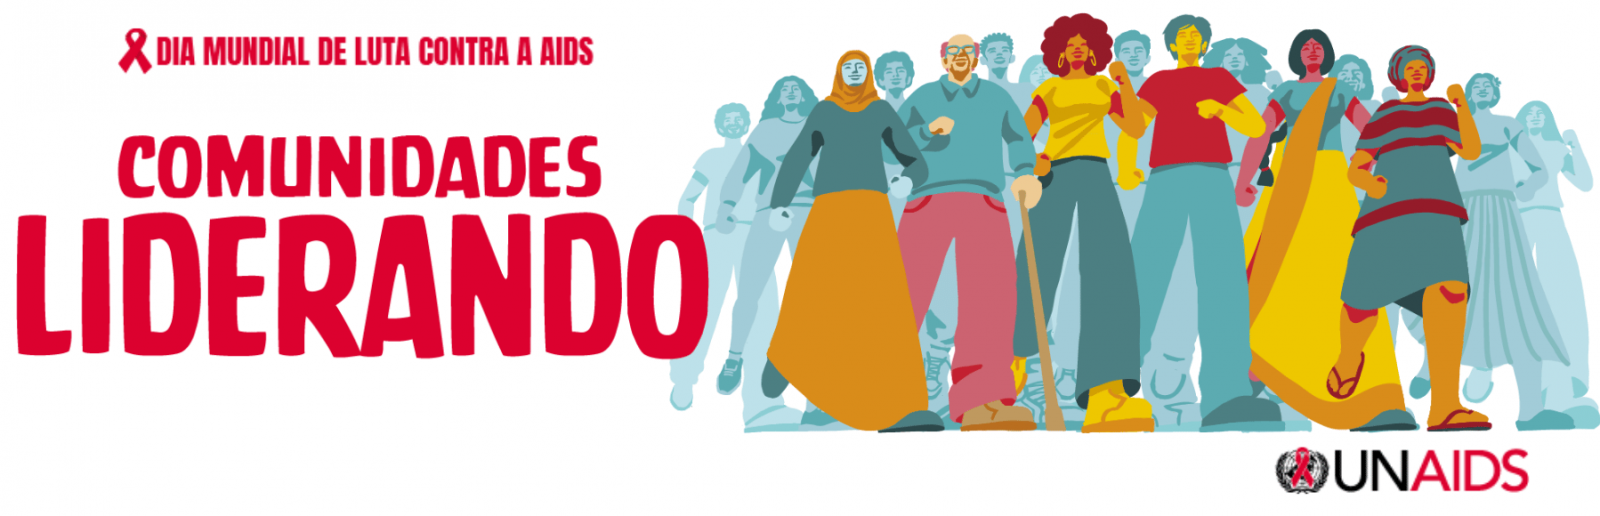 Campanha da Unaids da Luta contra AIDS